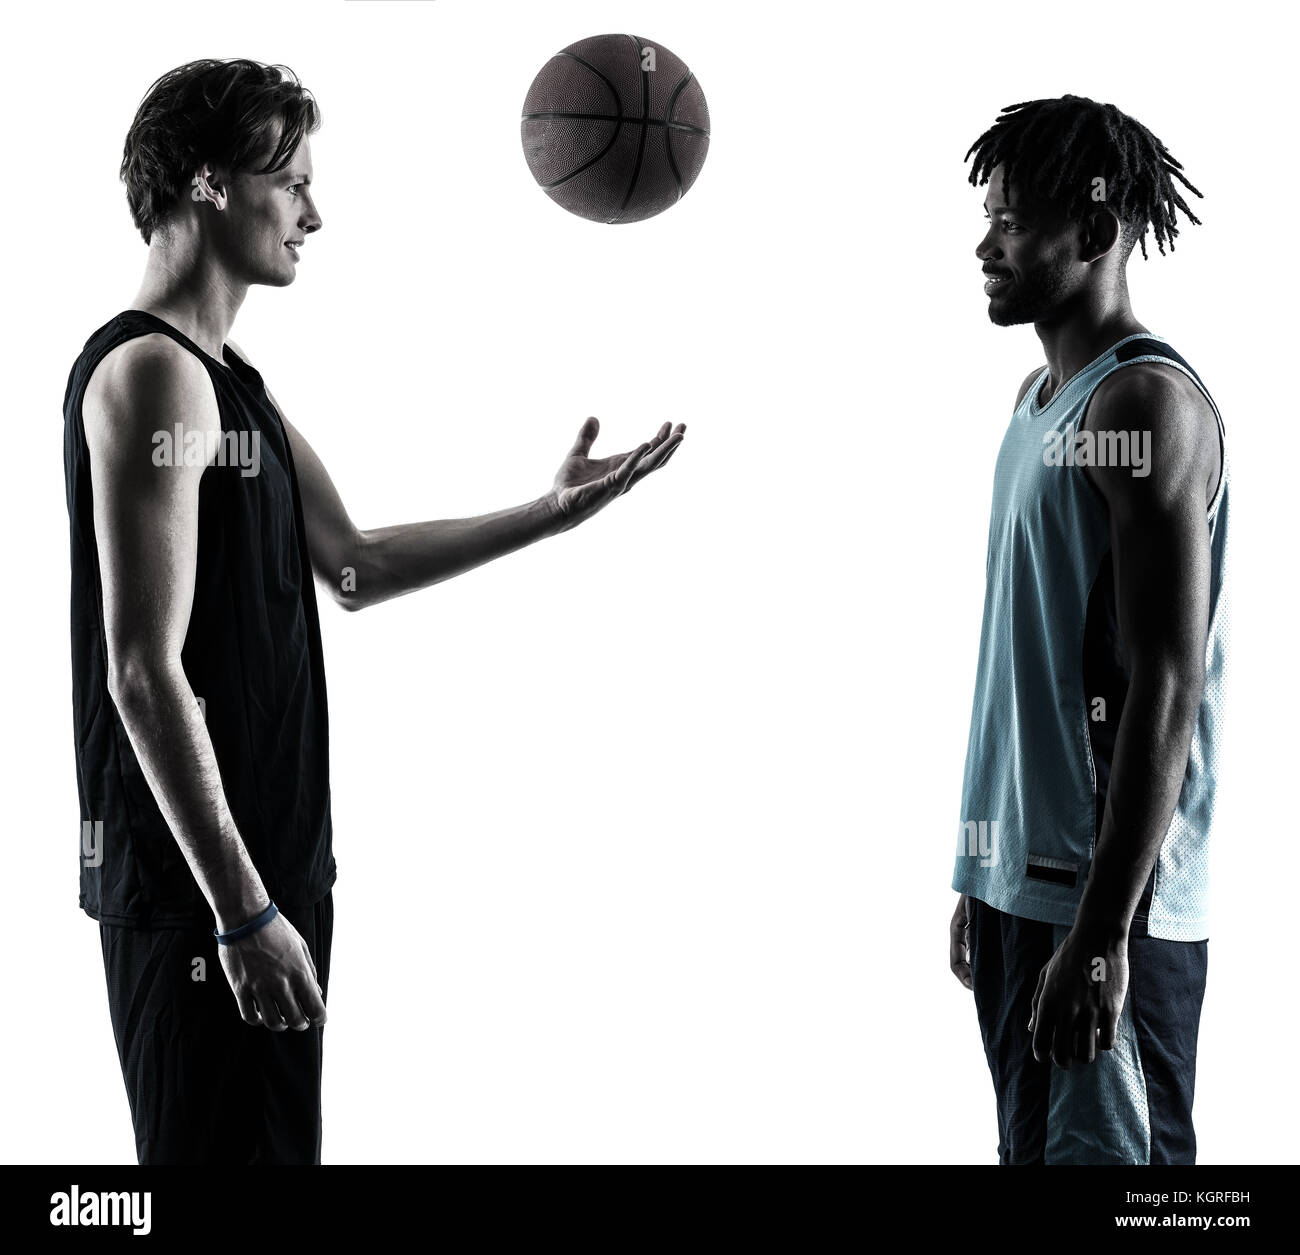 Deux joueurs de basket-ball hommes isolés dans l'ombre silhouette sur fond blanc Banque D'Images